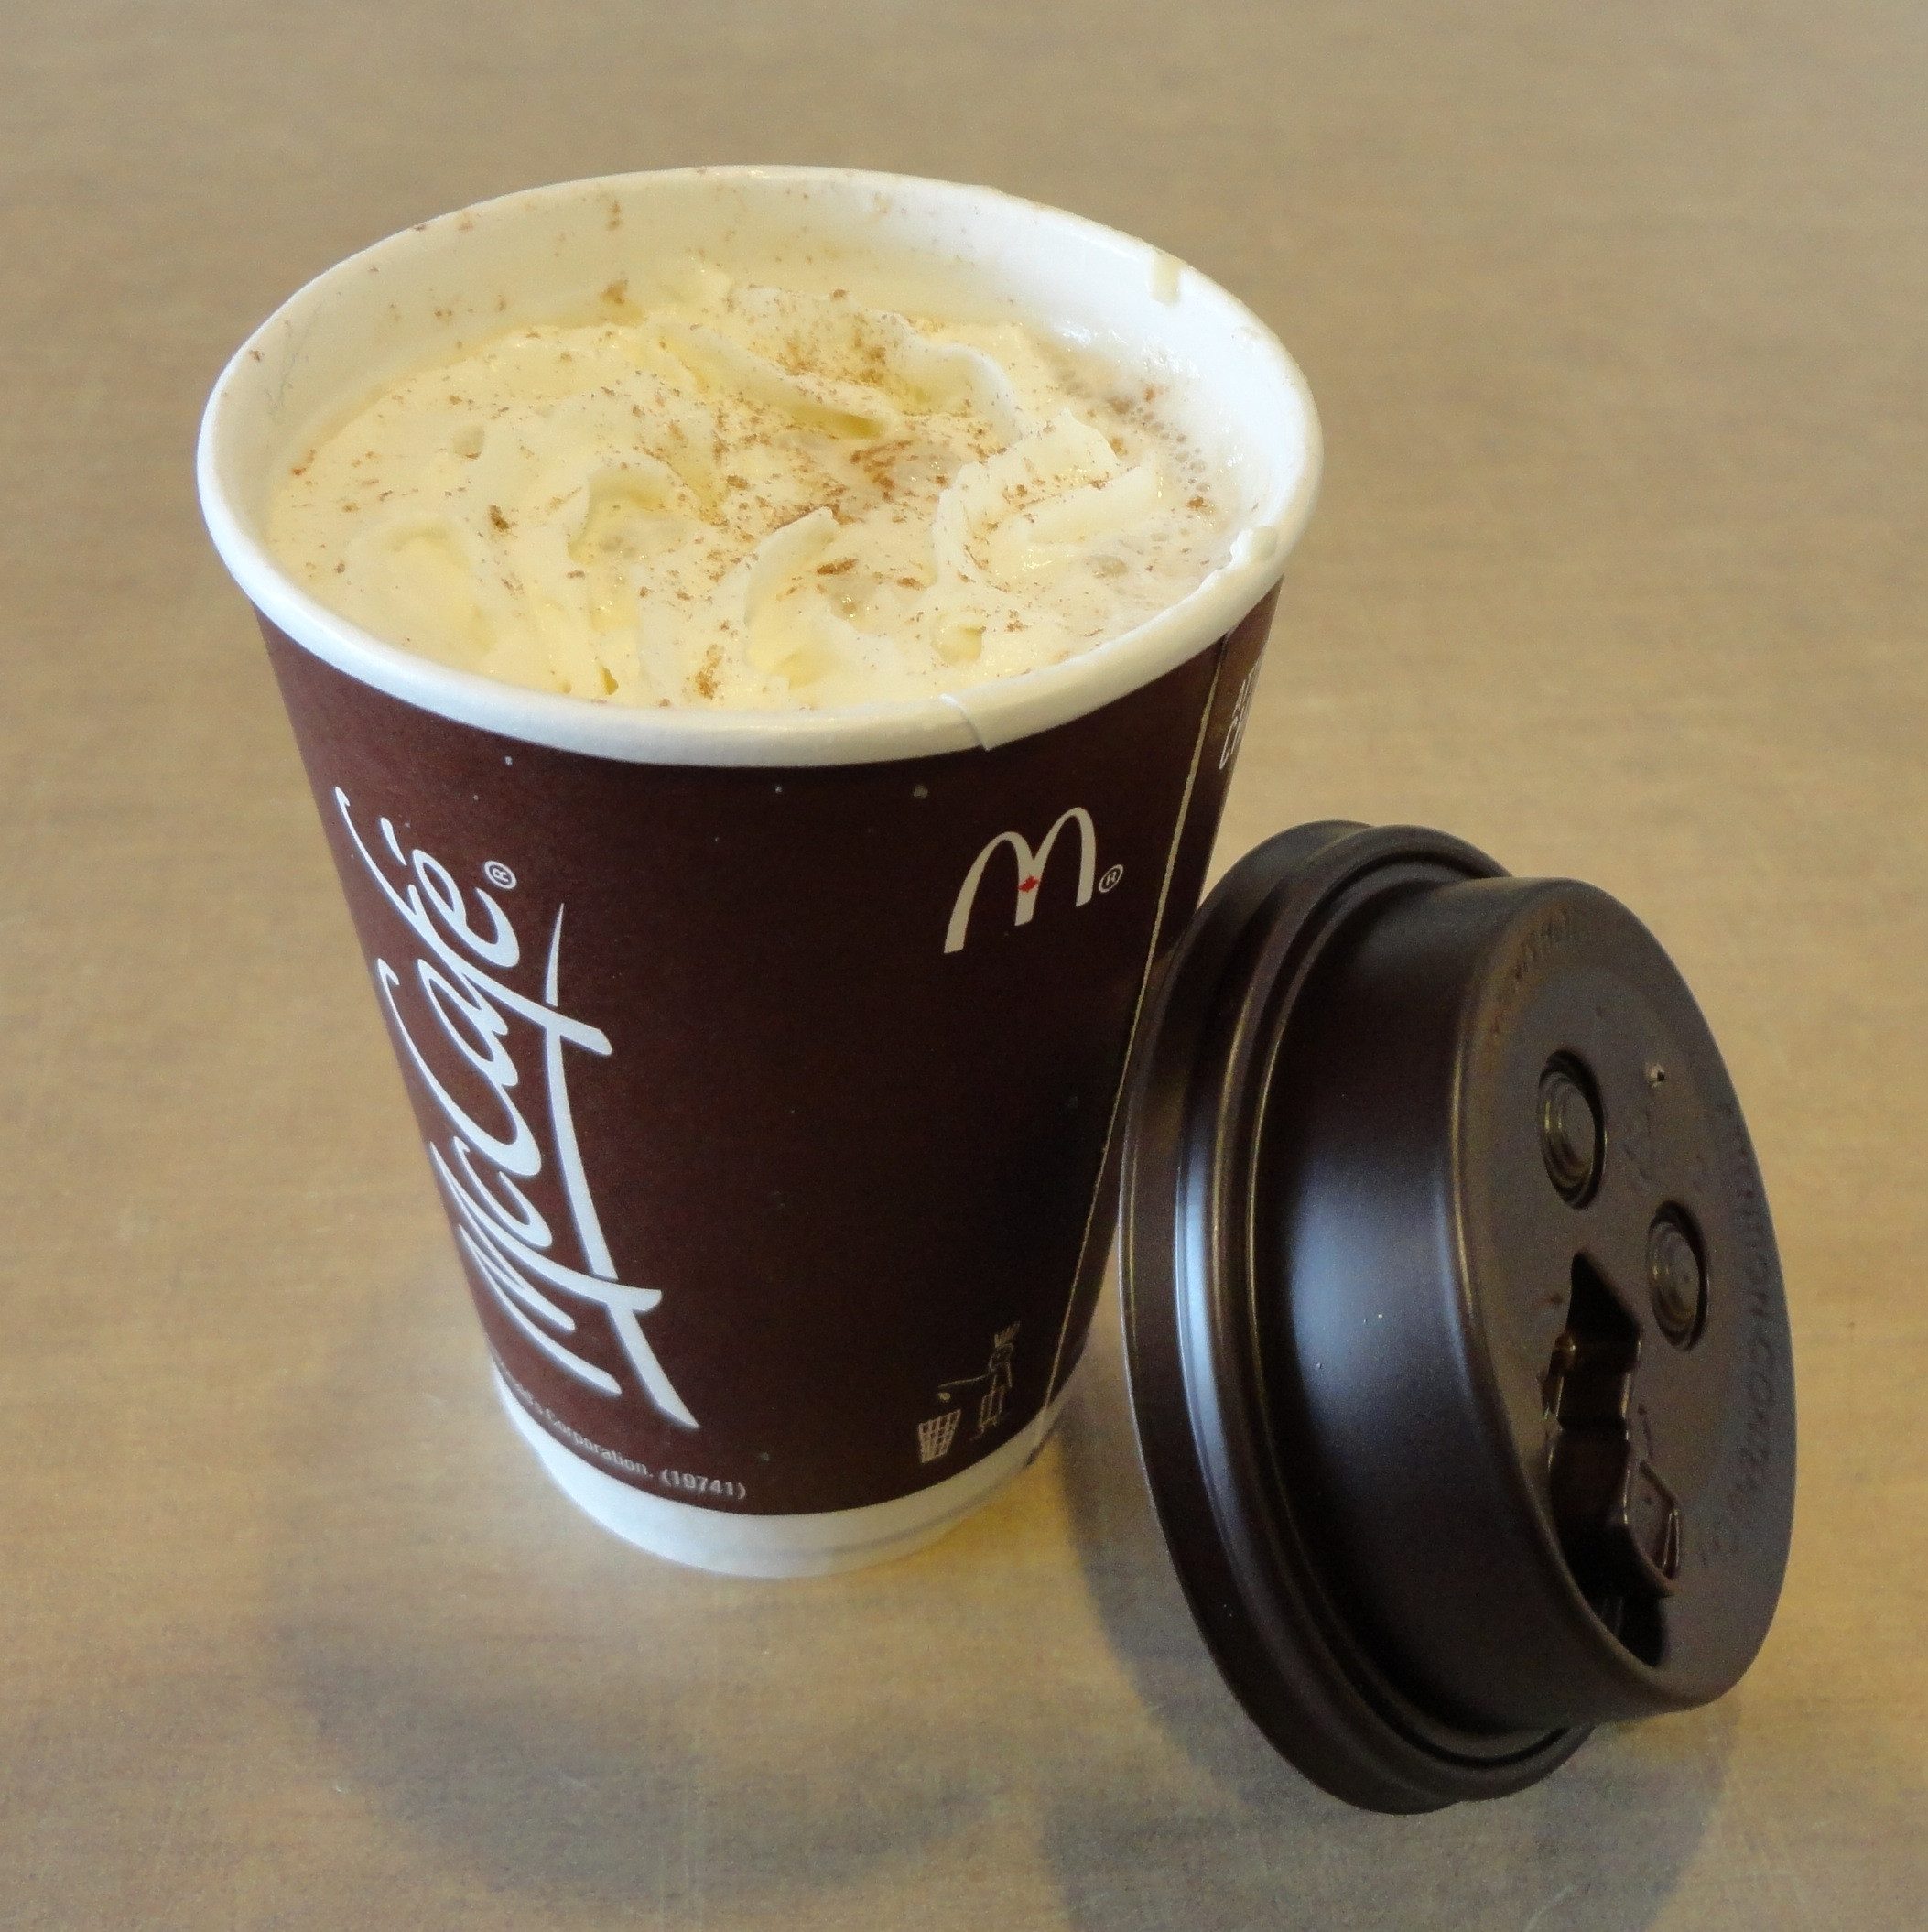 Mcdonalds Hot Chocolate
 hot chocolate